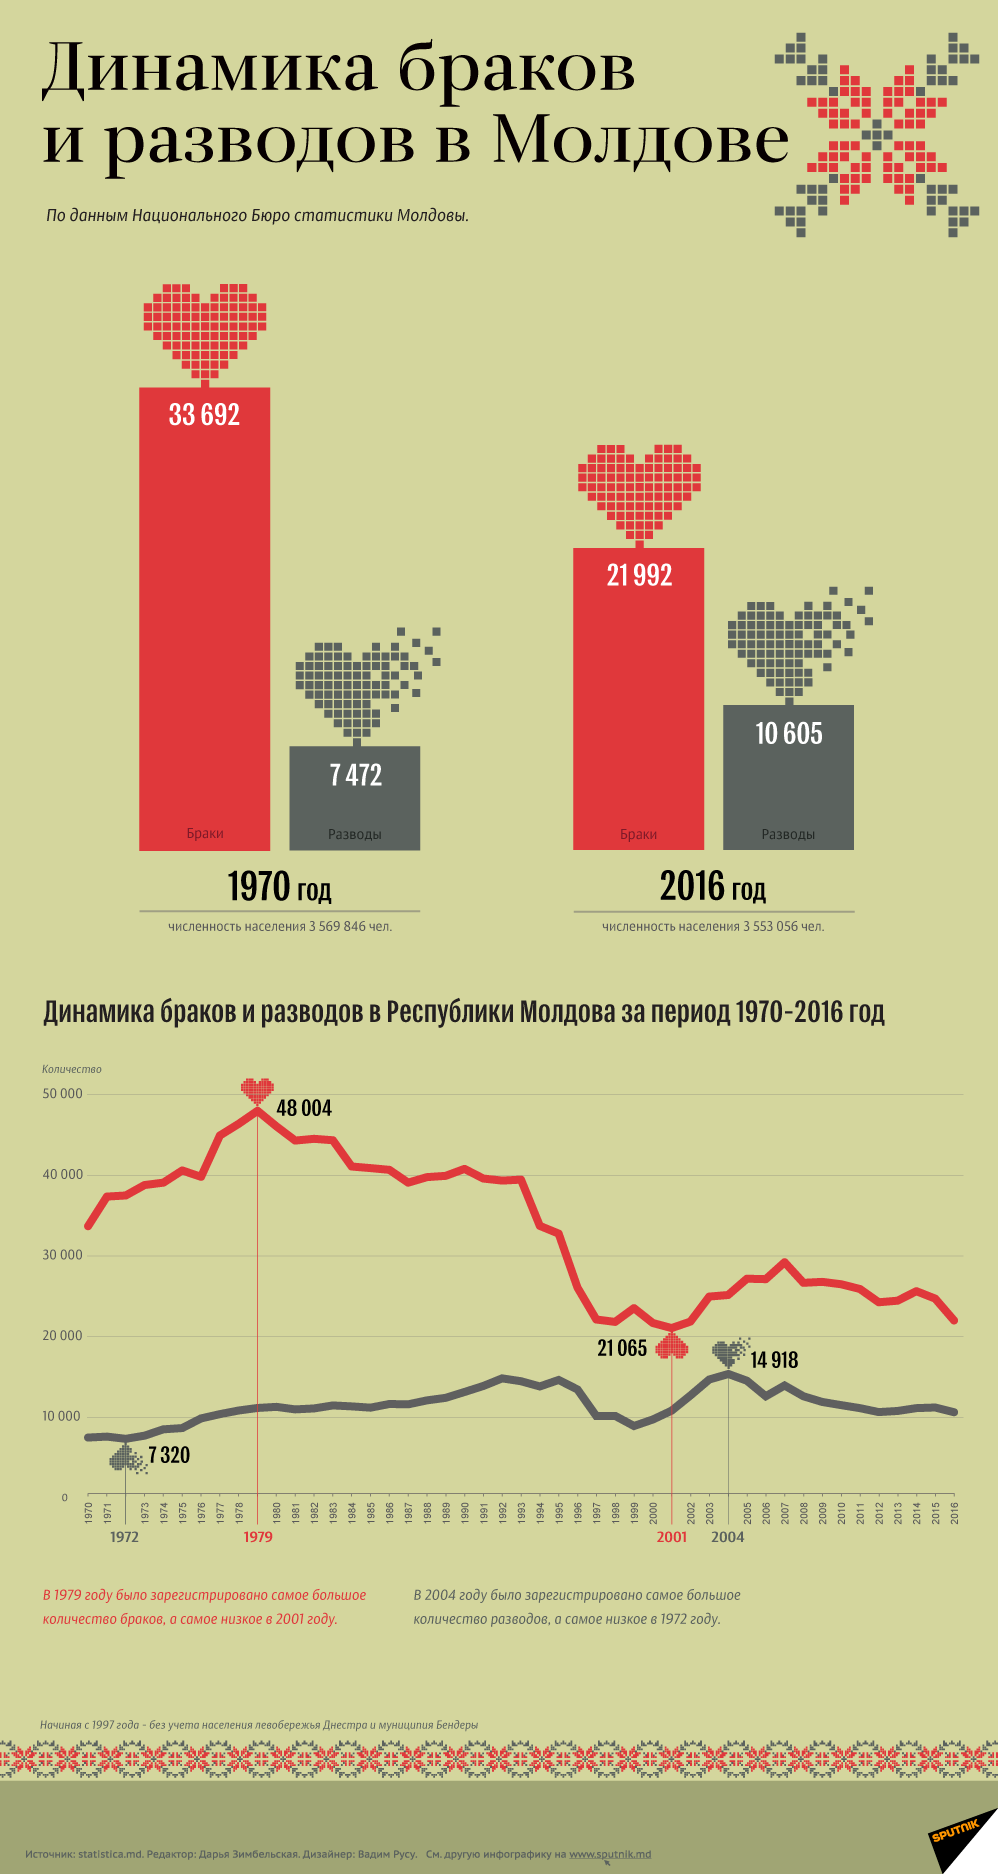 Динамика Браков и разводов в Молдове - Sputnik Молдова